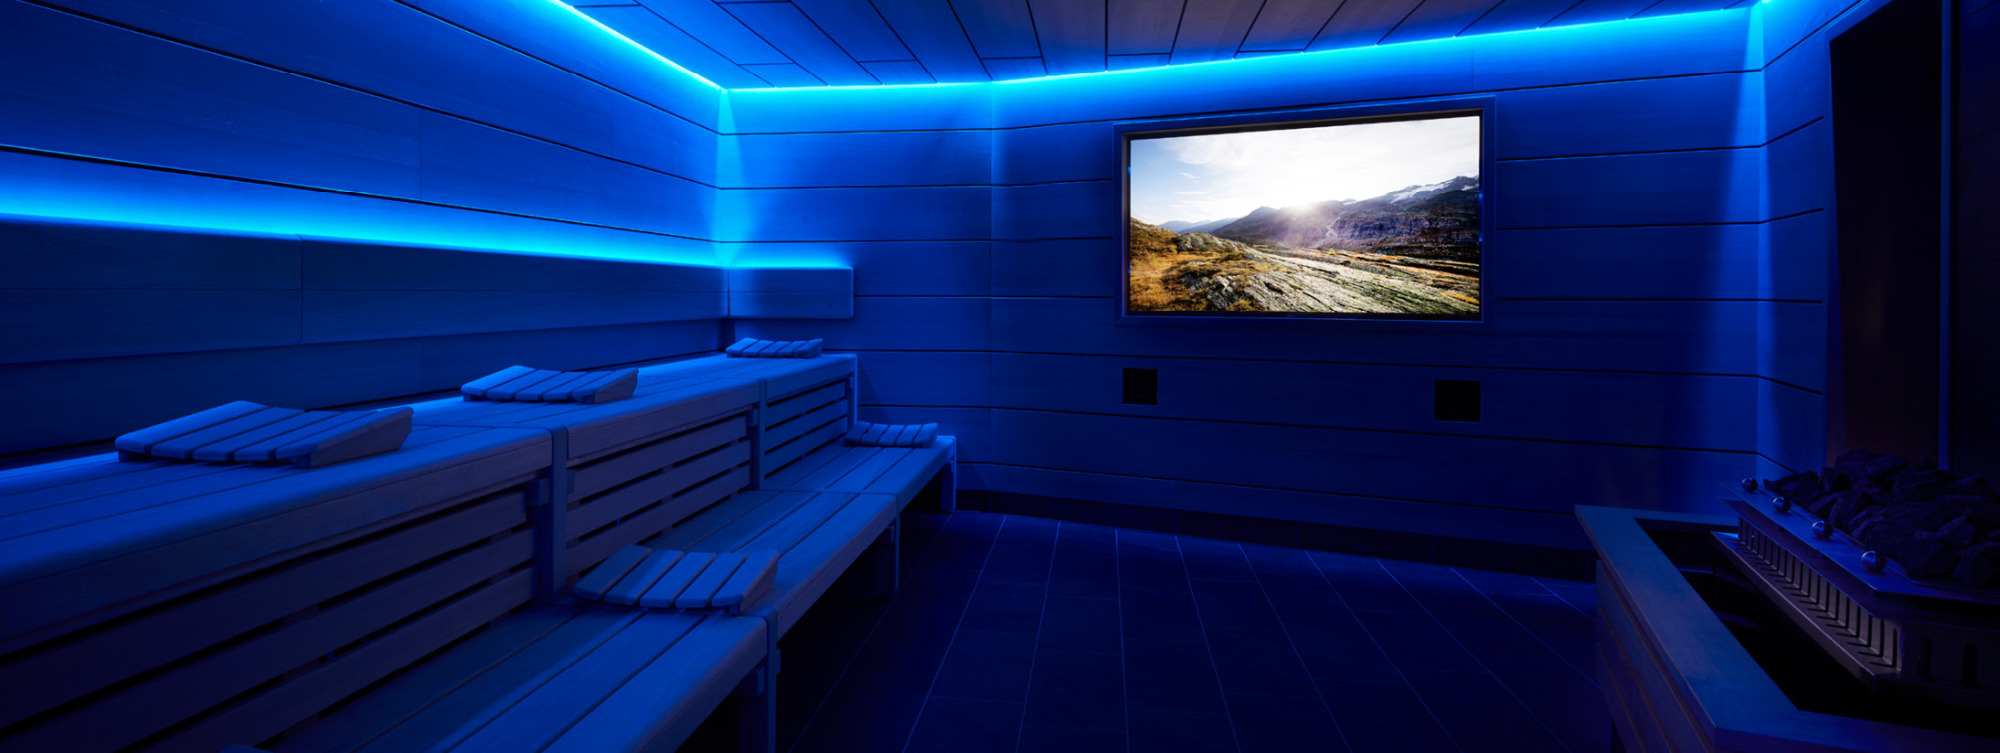 Sauna mit blauer Beleuchtung und Bildschirm, auf dem Landschaft gezeigt wird